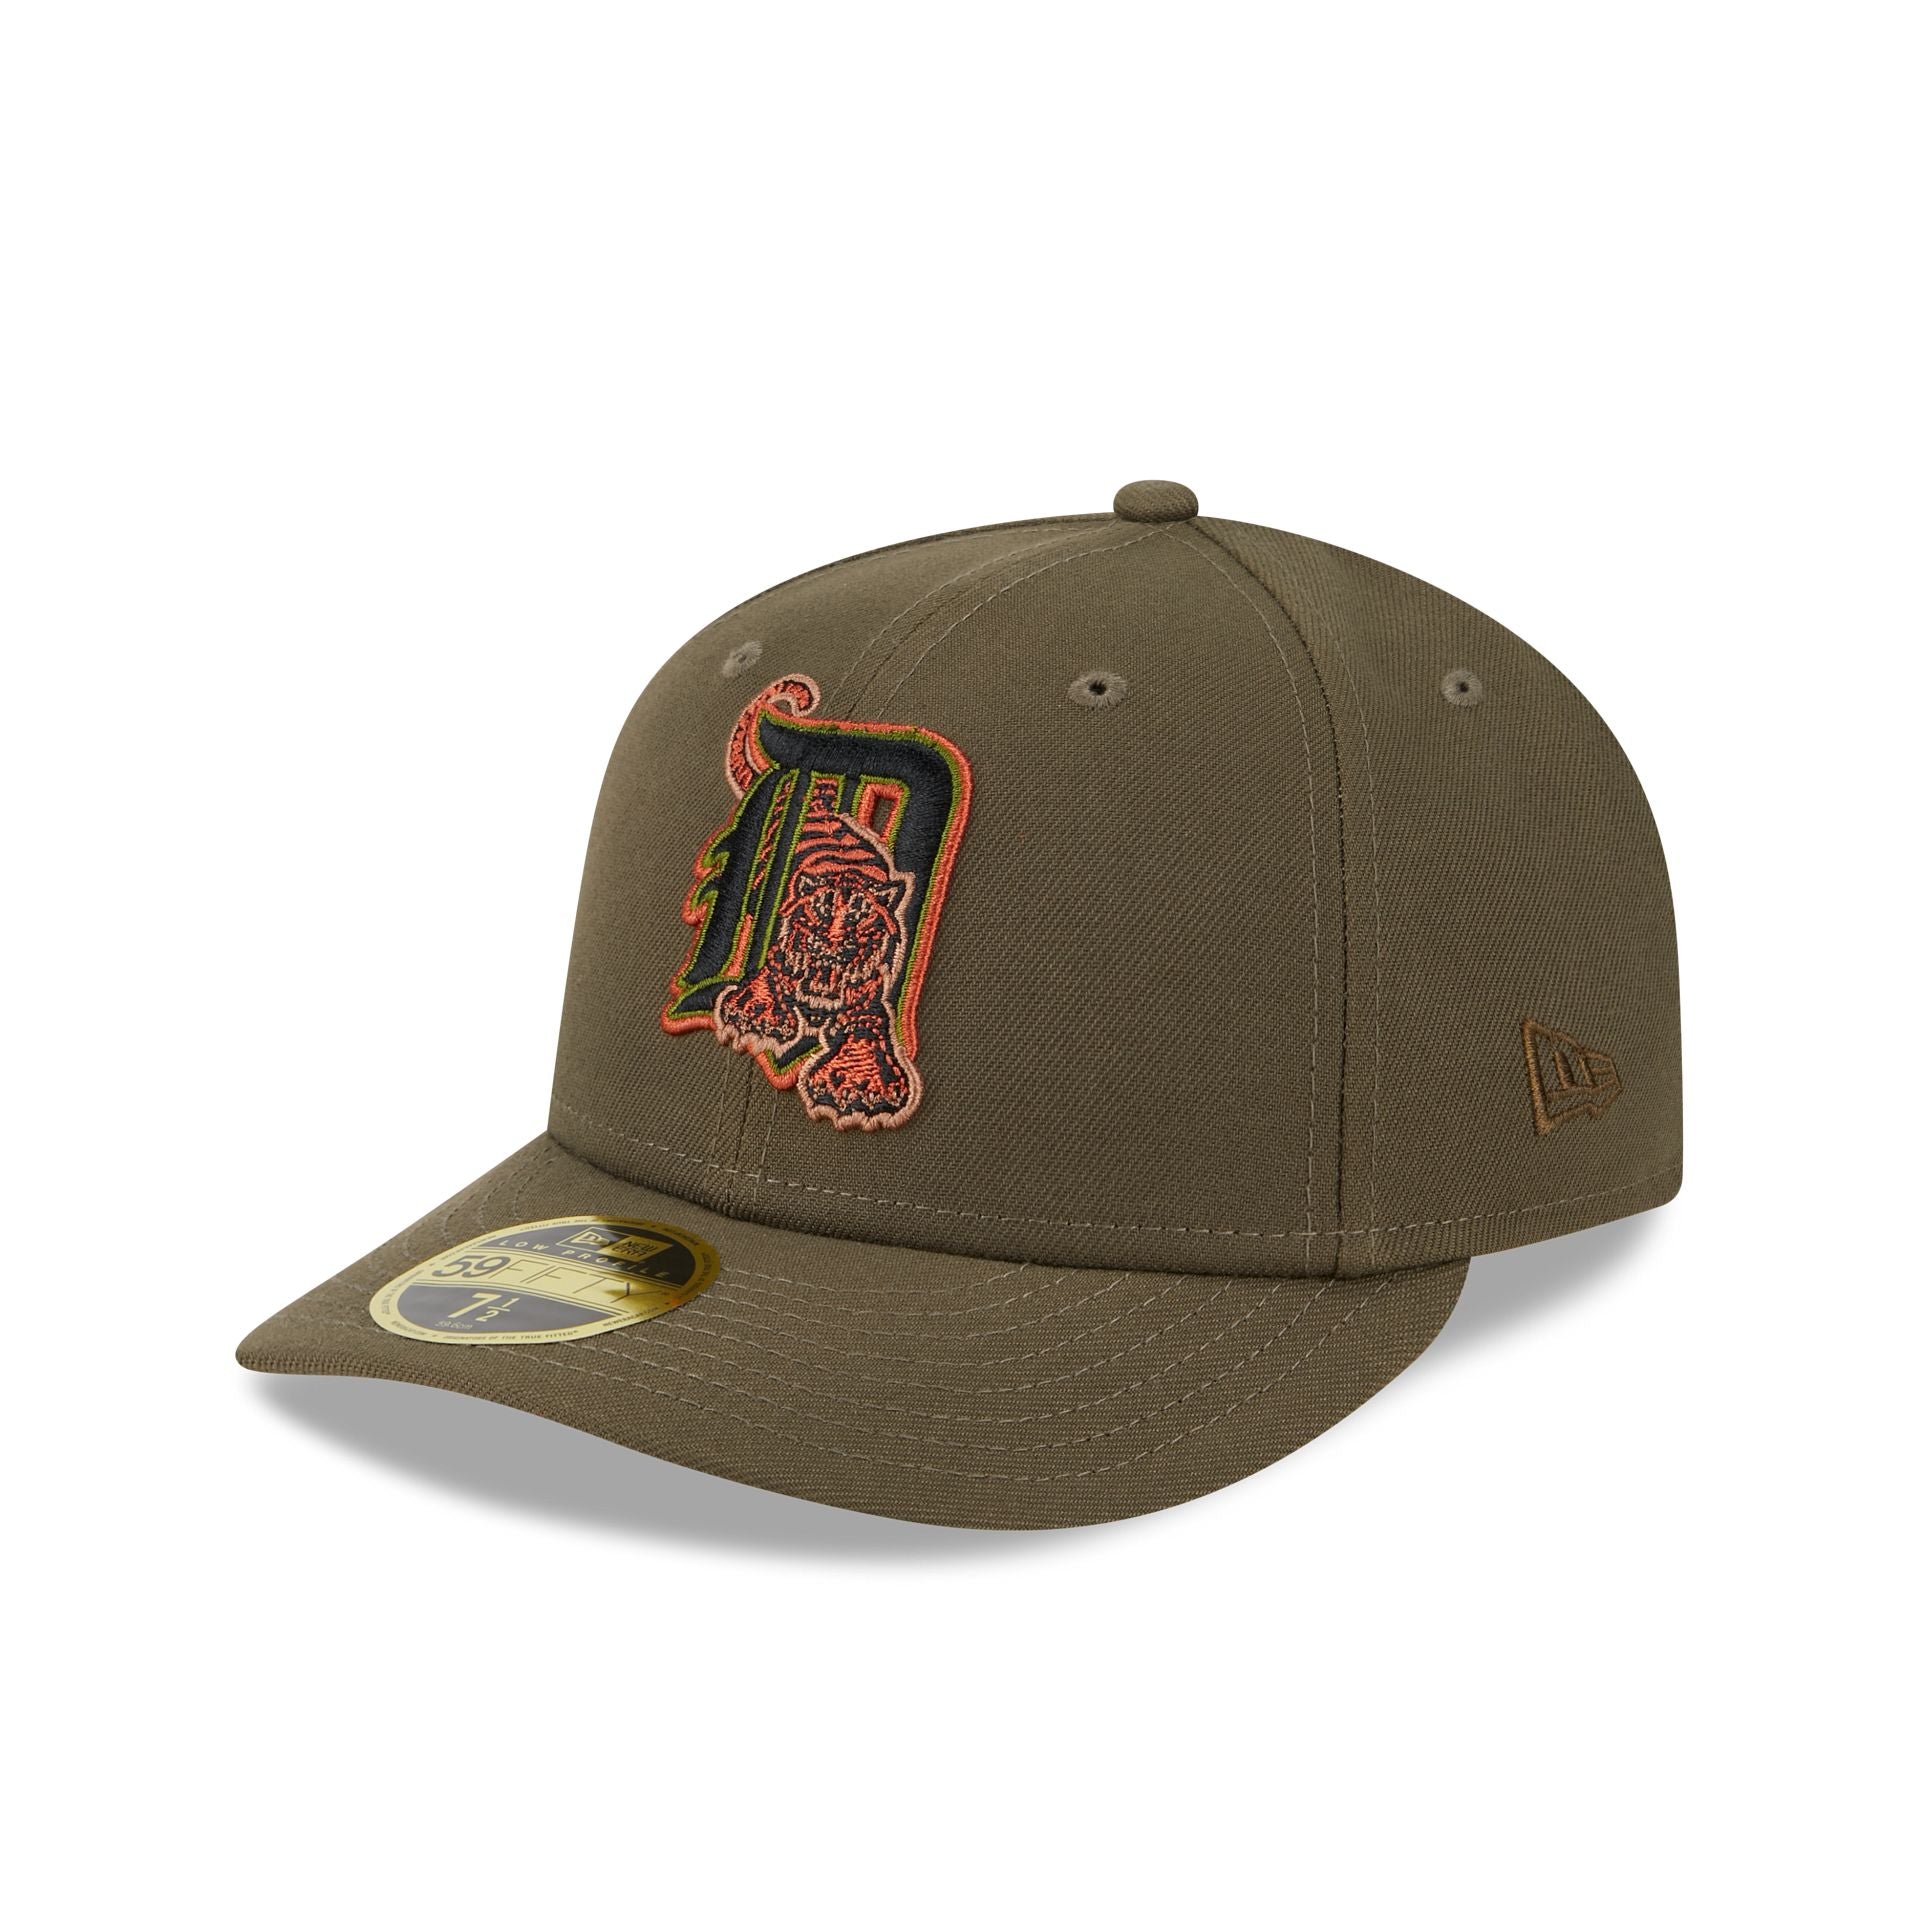 Hats – Cap Detroit & Caps Era Tigers New